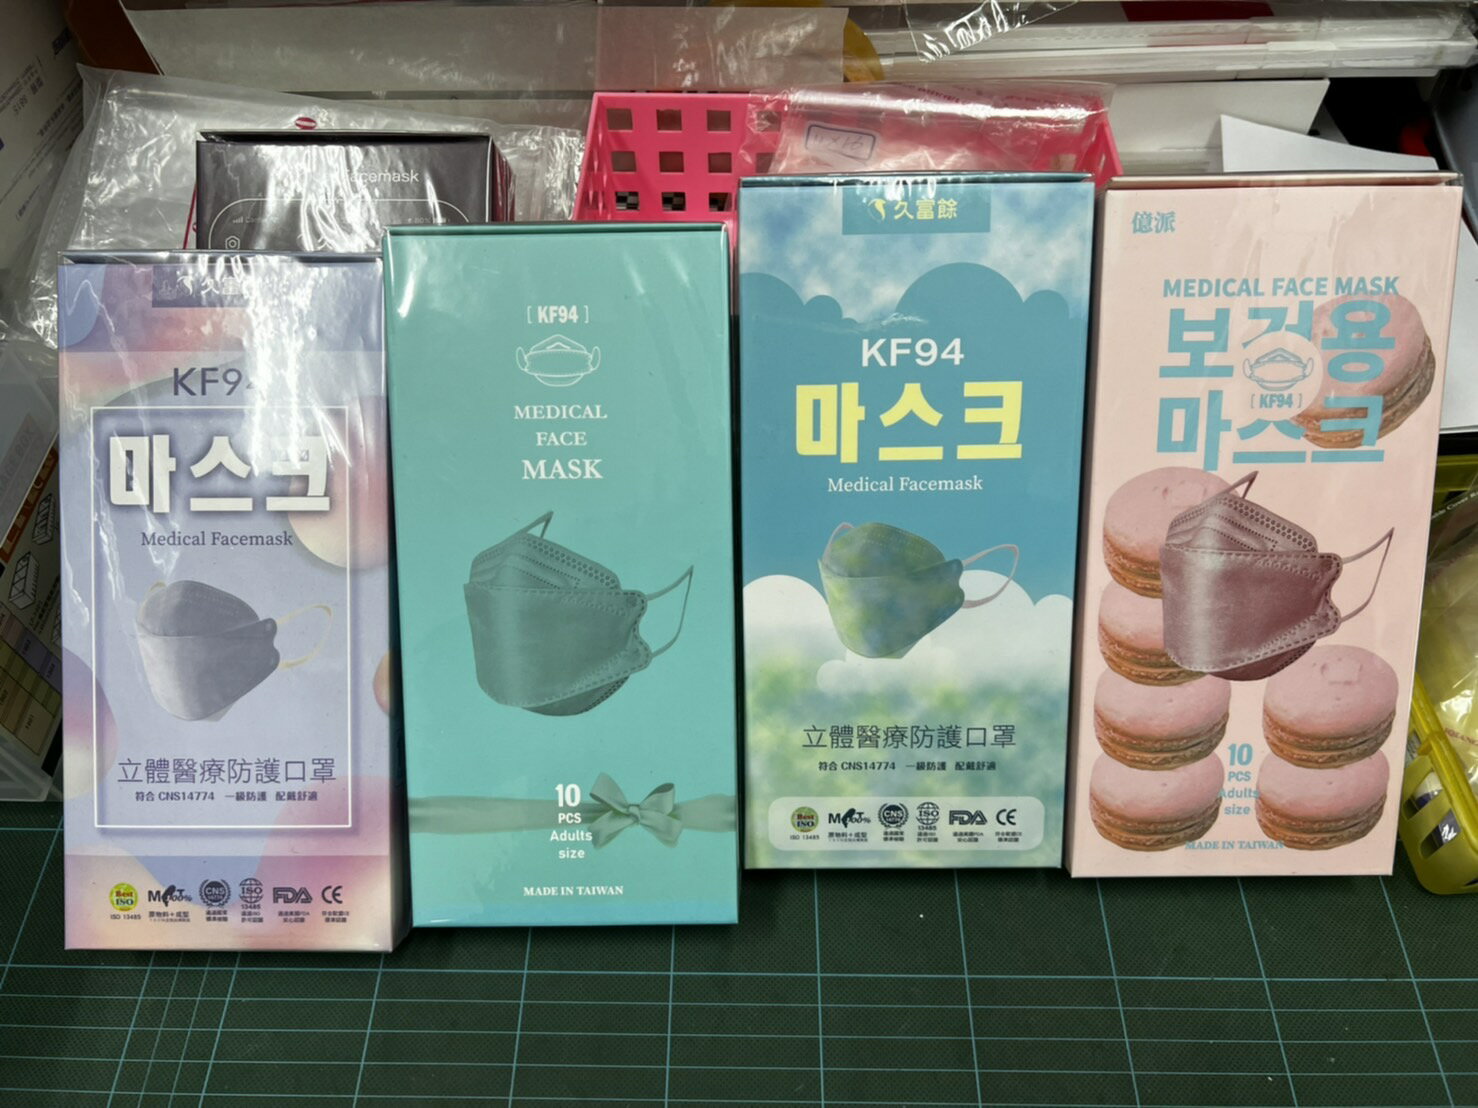 【久富餘】 全台最低價 4D韓版4層立體醫療口罩-商品 (10片/盒 x1 ) 活動促銷